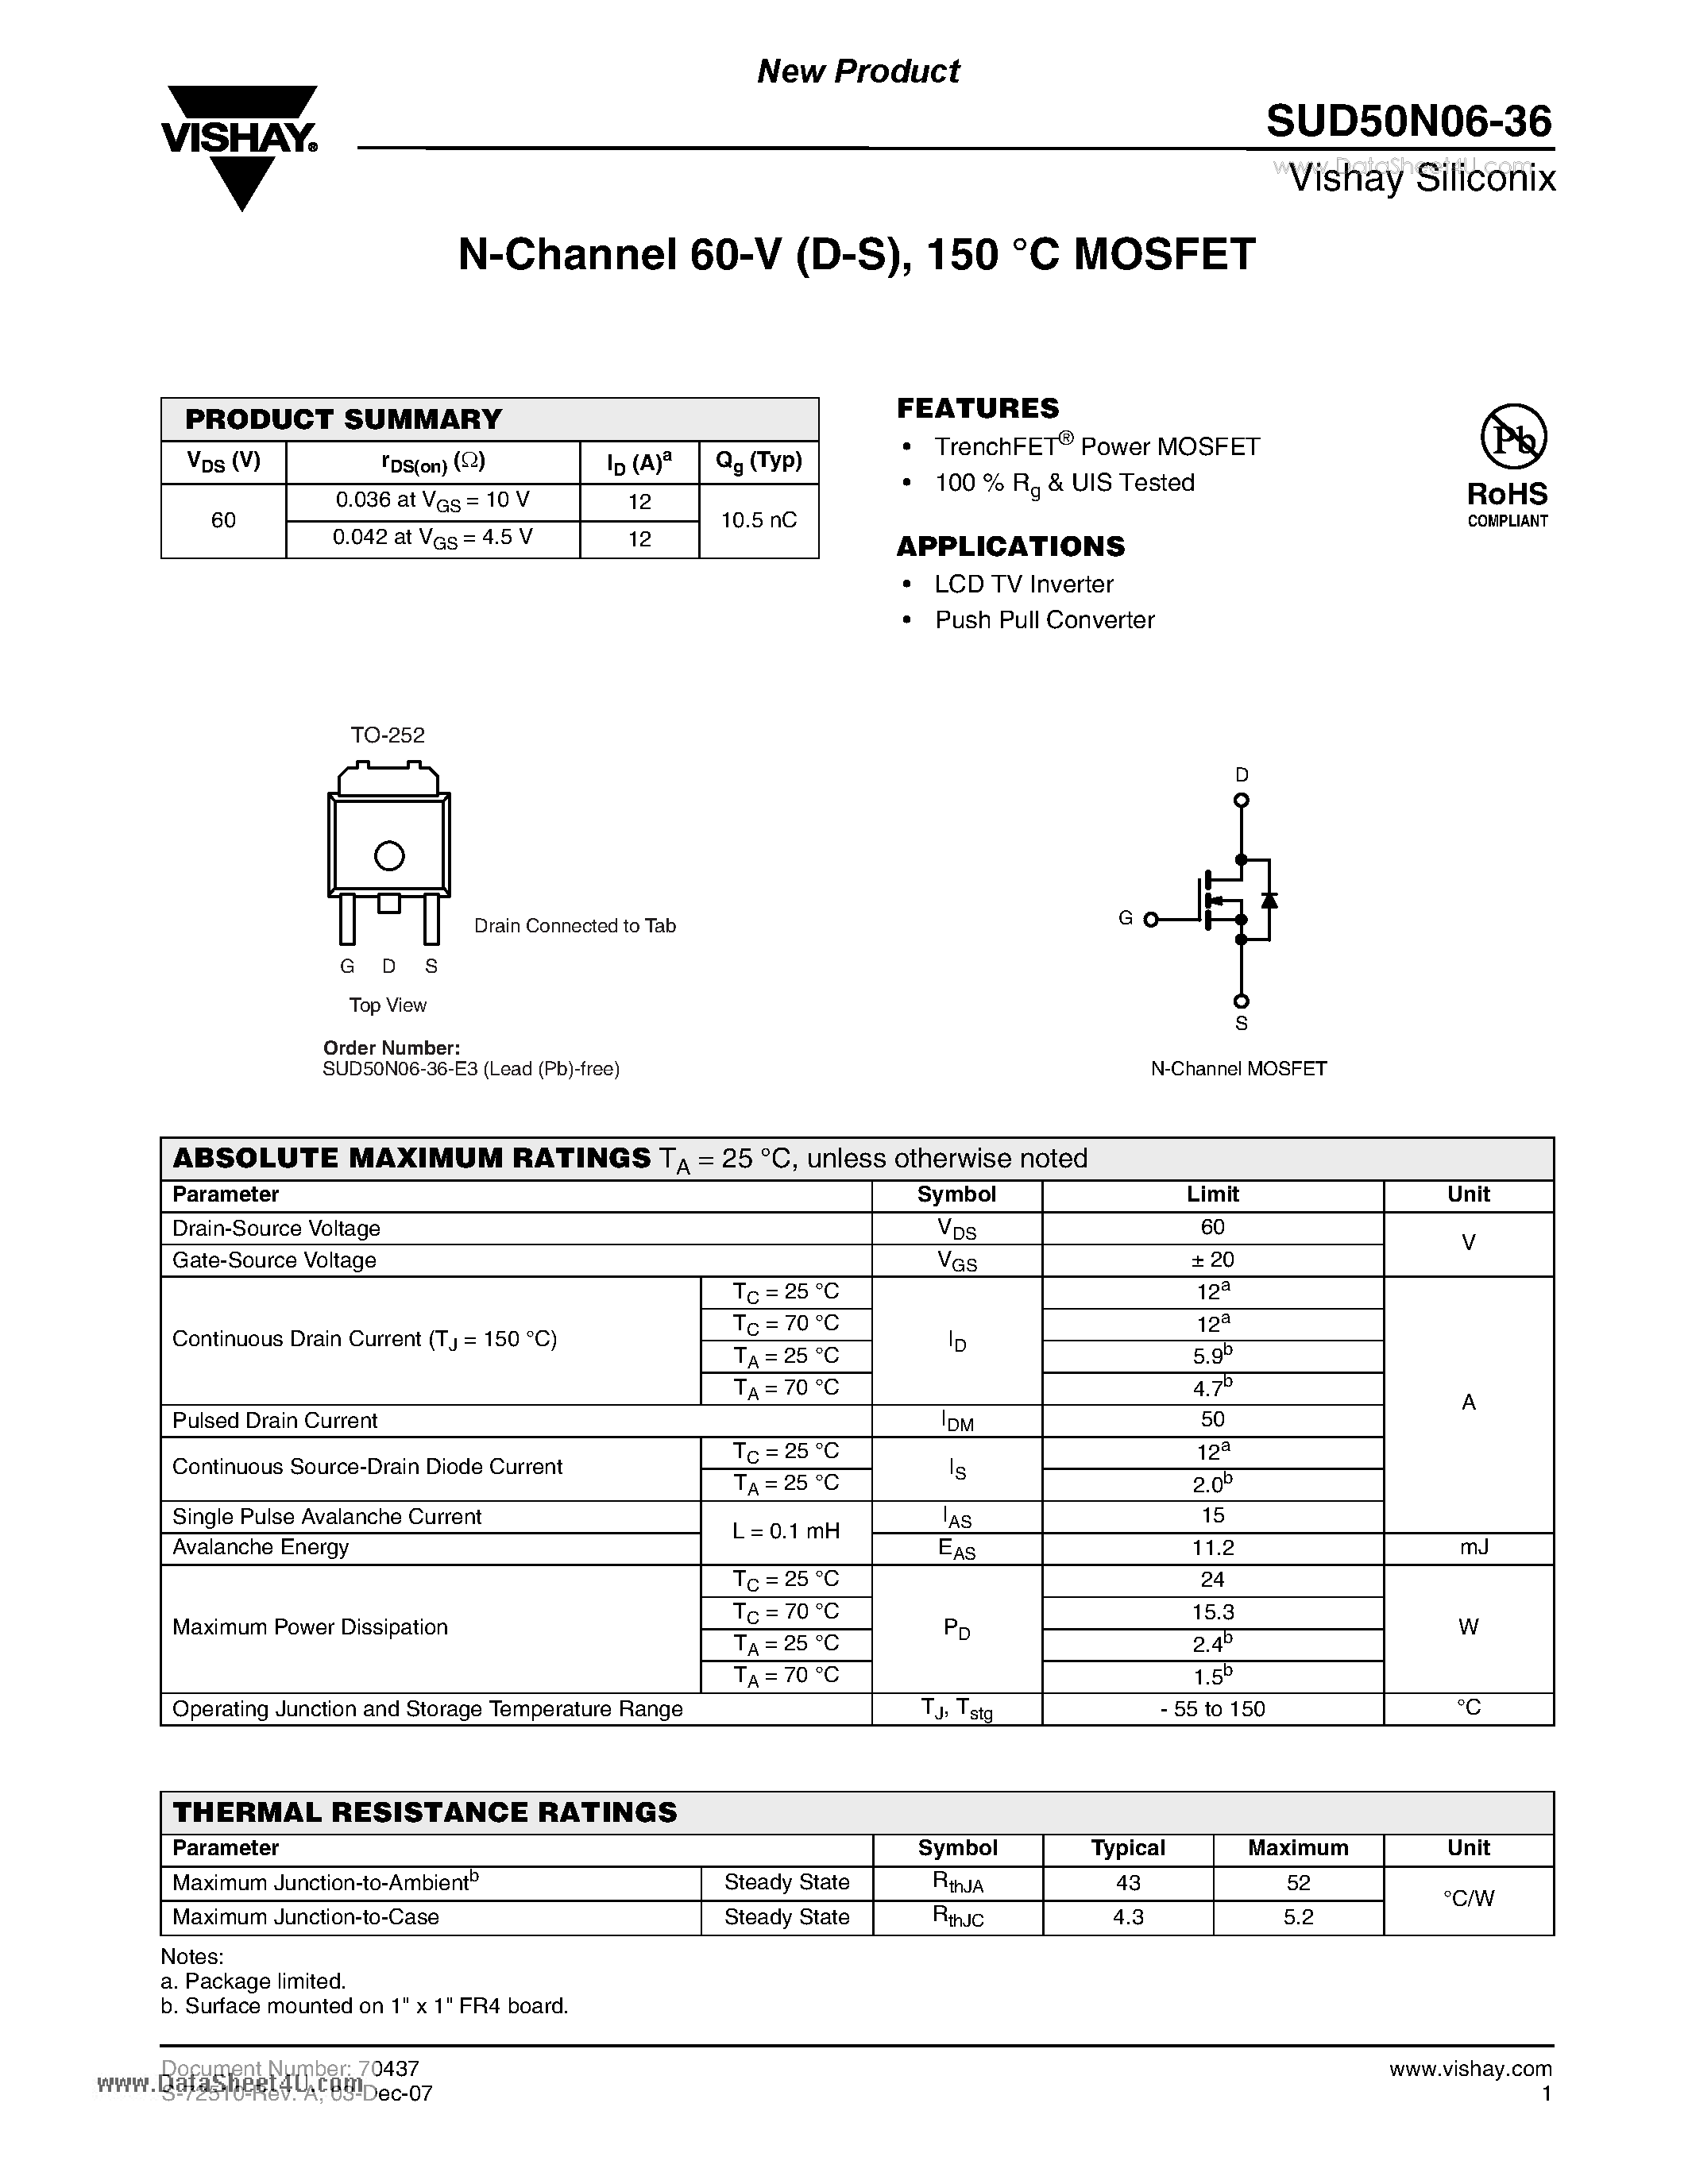 Даташит SUD50N06-36 - N-Channel 60-V (D-S) 150 C MOSFET страница 1